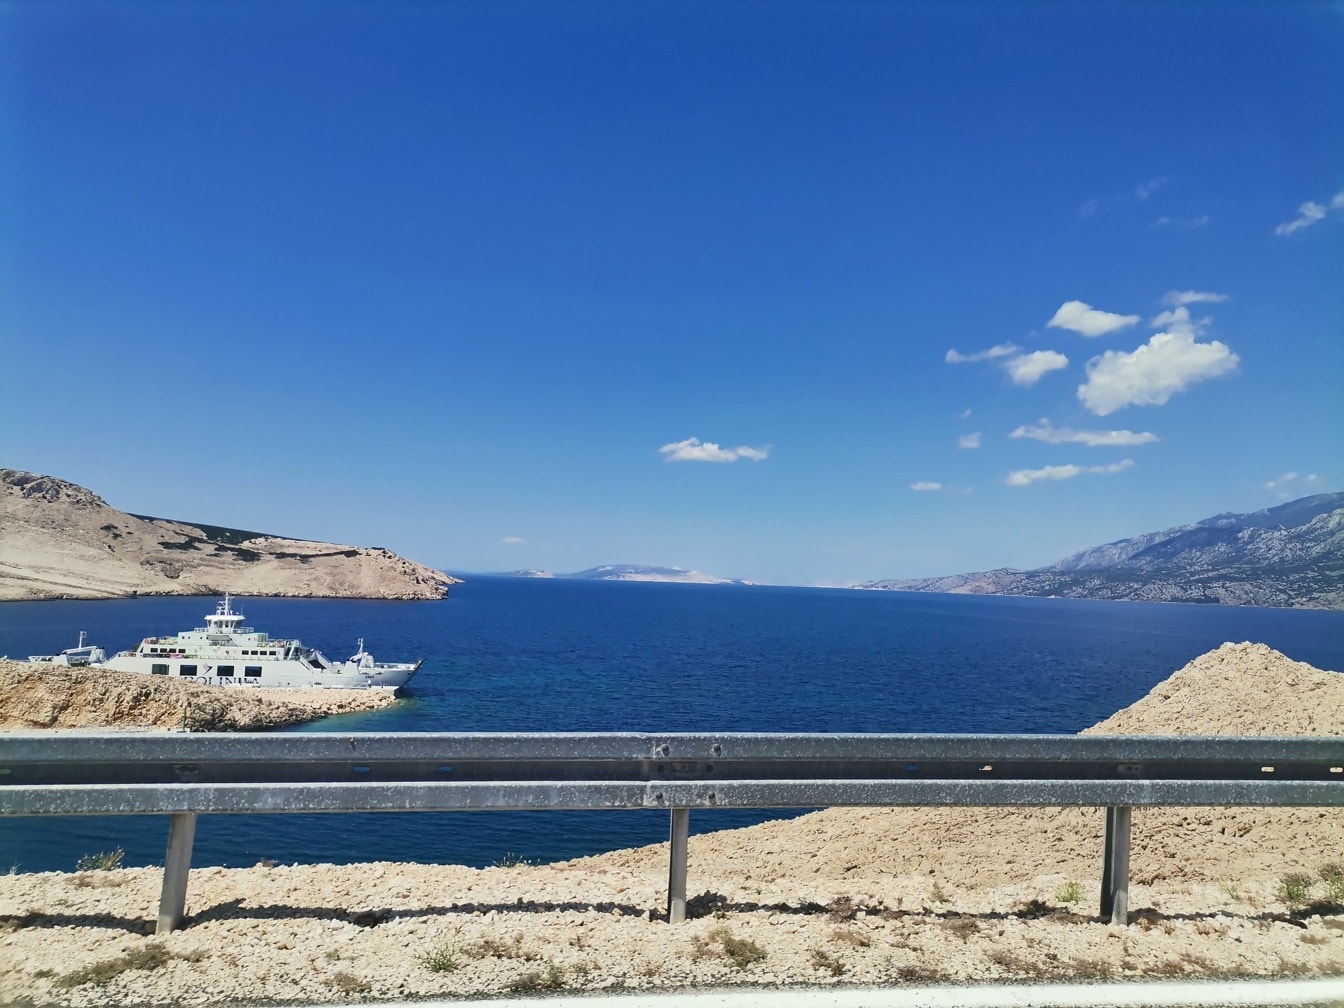 Toàn cảnh biển Adriatic với tàu du lịch